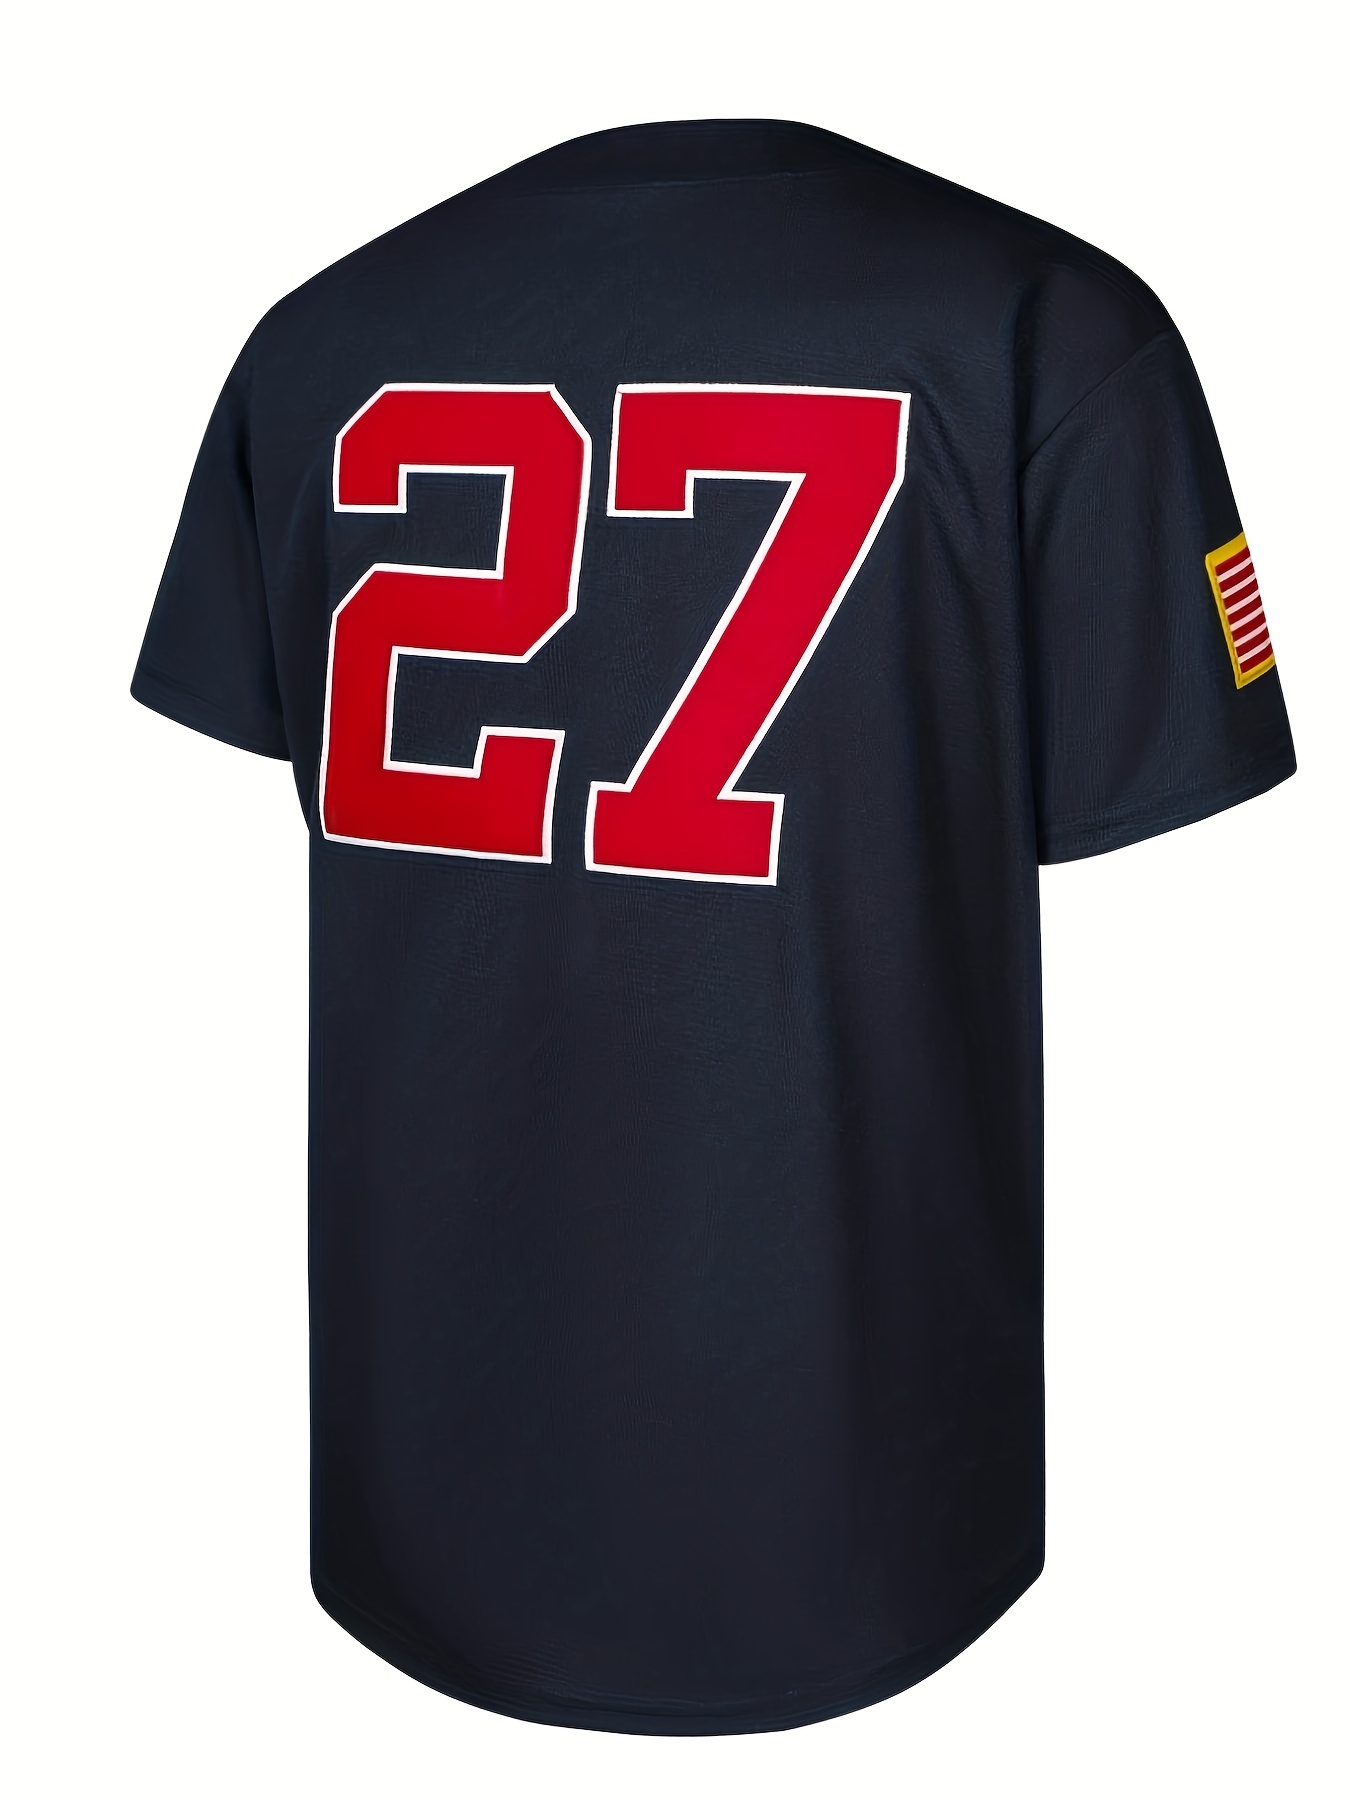 Men's Usa Baseball Jersey, #27 99 3 20 Embroidery Slightly Stretch